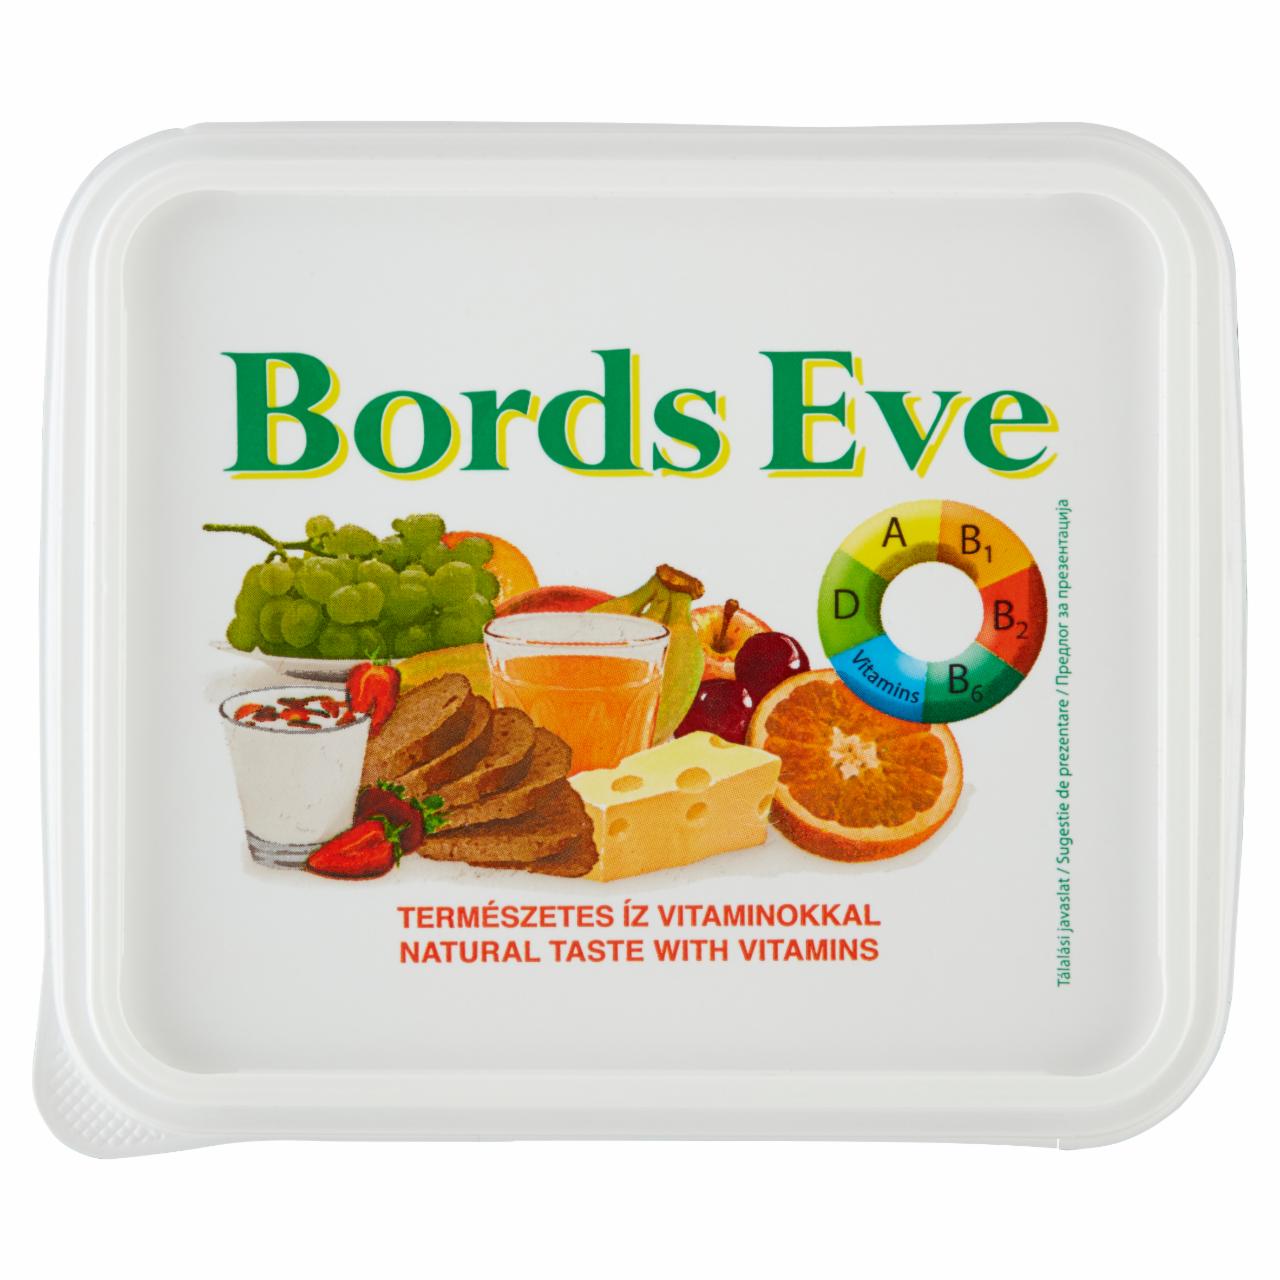 Képek - Bords Eve csökkentett zsírtartalmú margarin vitaminokkal 500 g